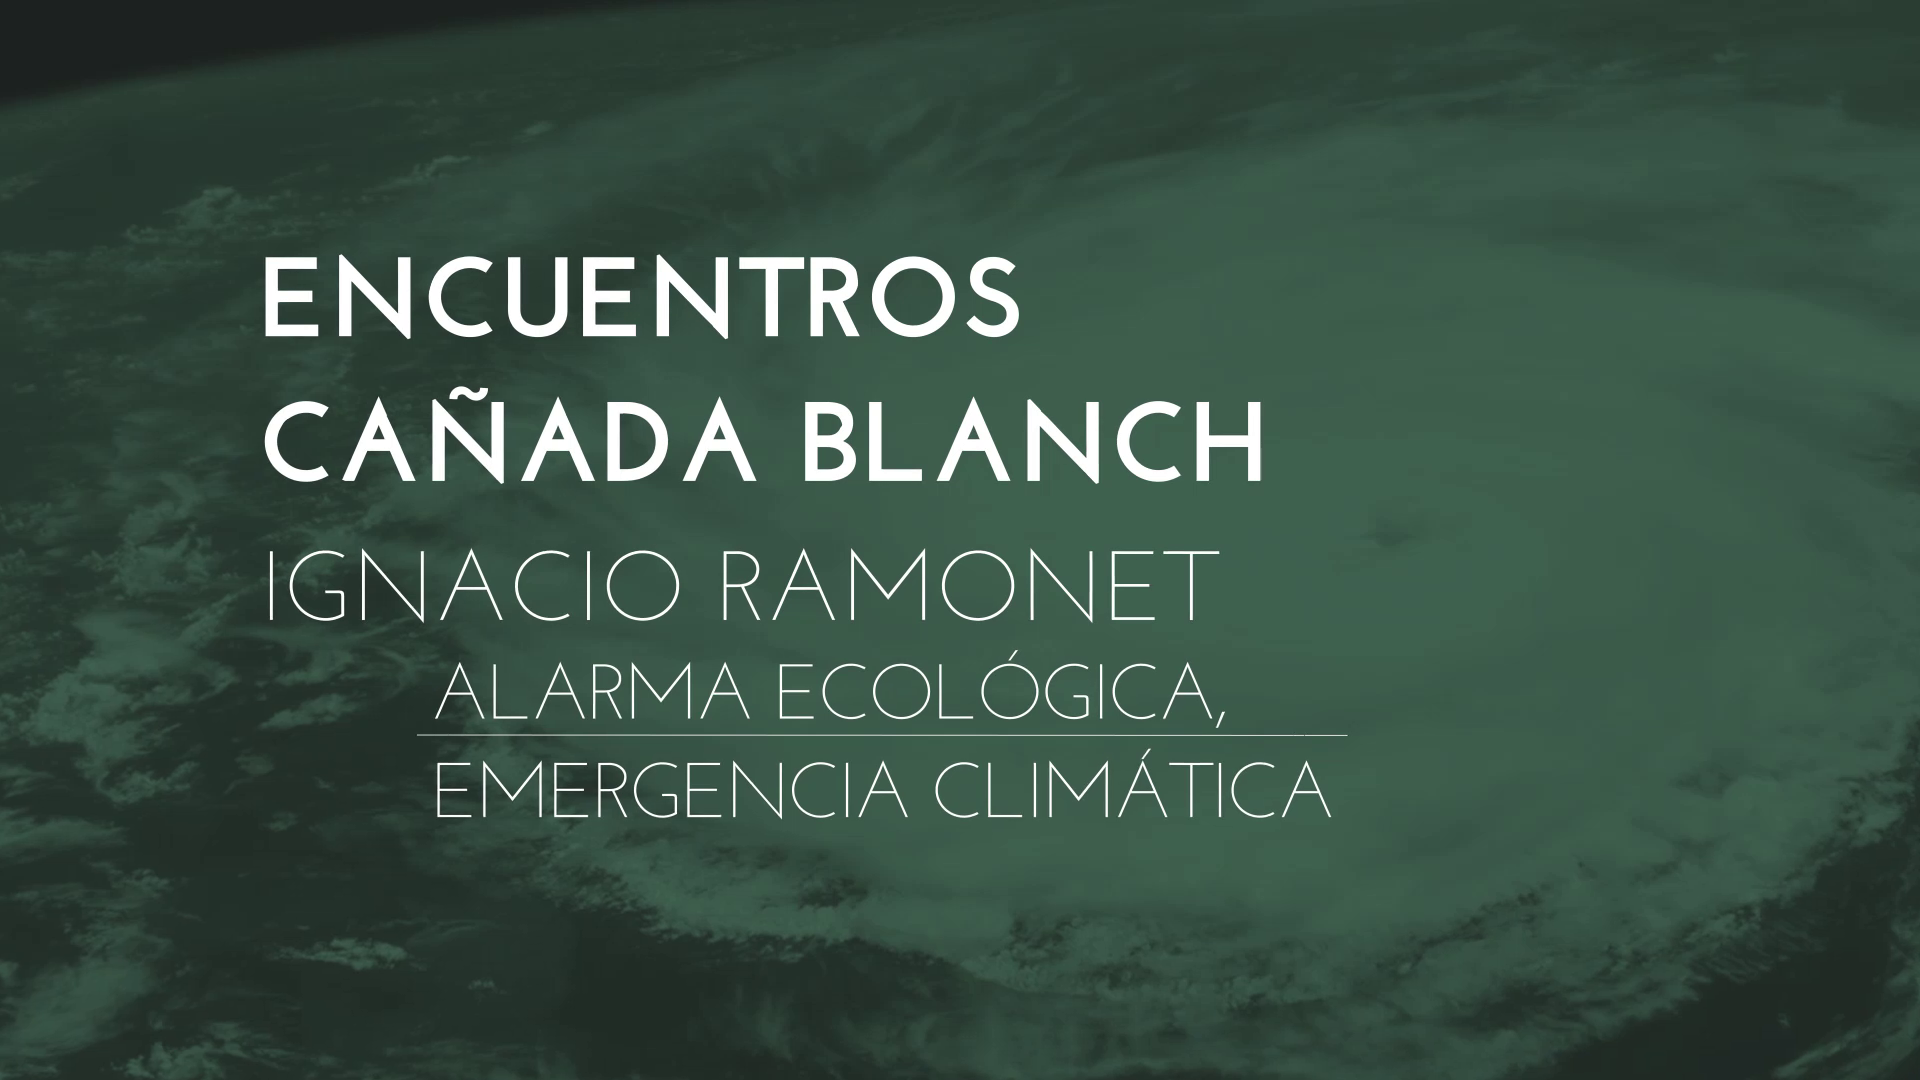 Imatge de la portada del video;Encuentros Cañada Blanch - Ignacio Ramonet